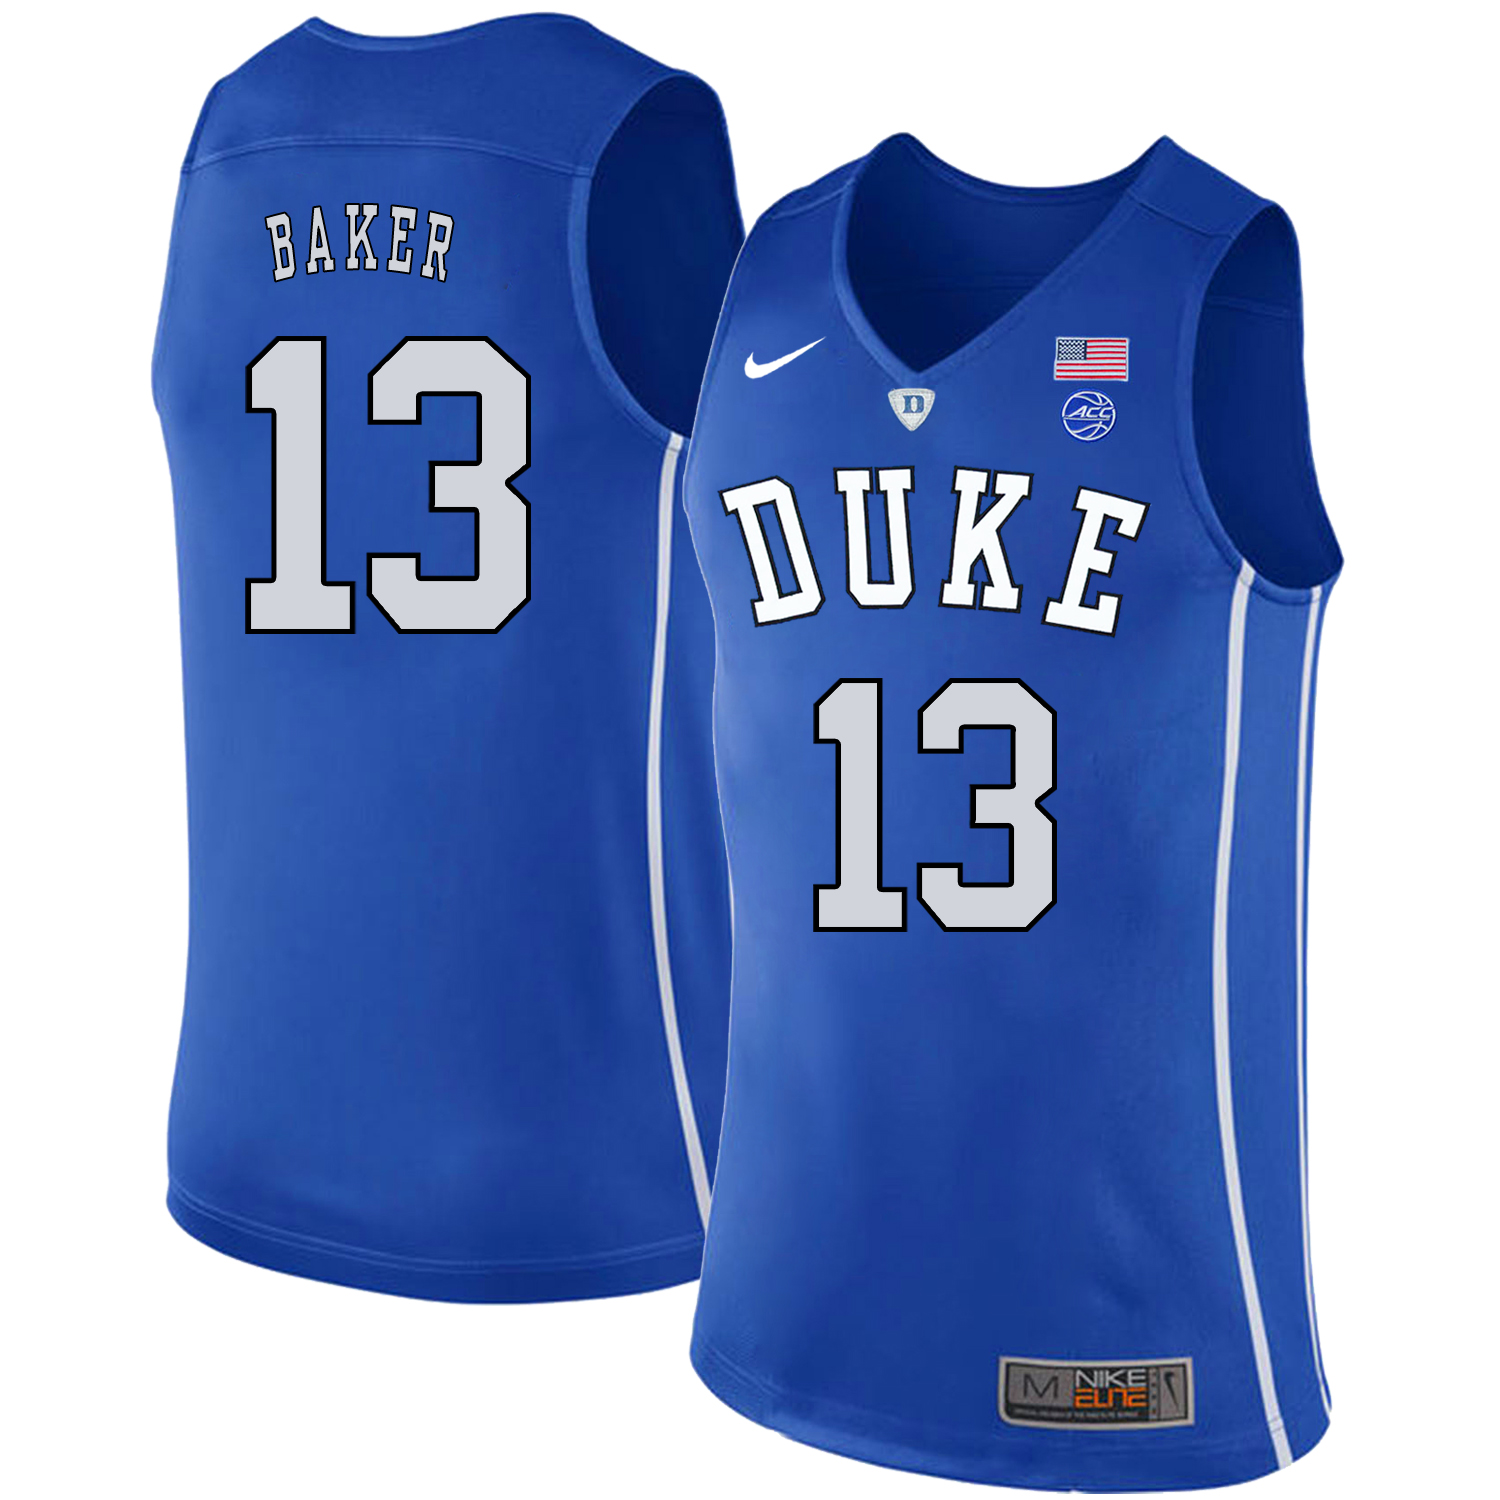 Duke Blue Devils 13 Joey Baker Blue Nike College Basketball Jersey